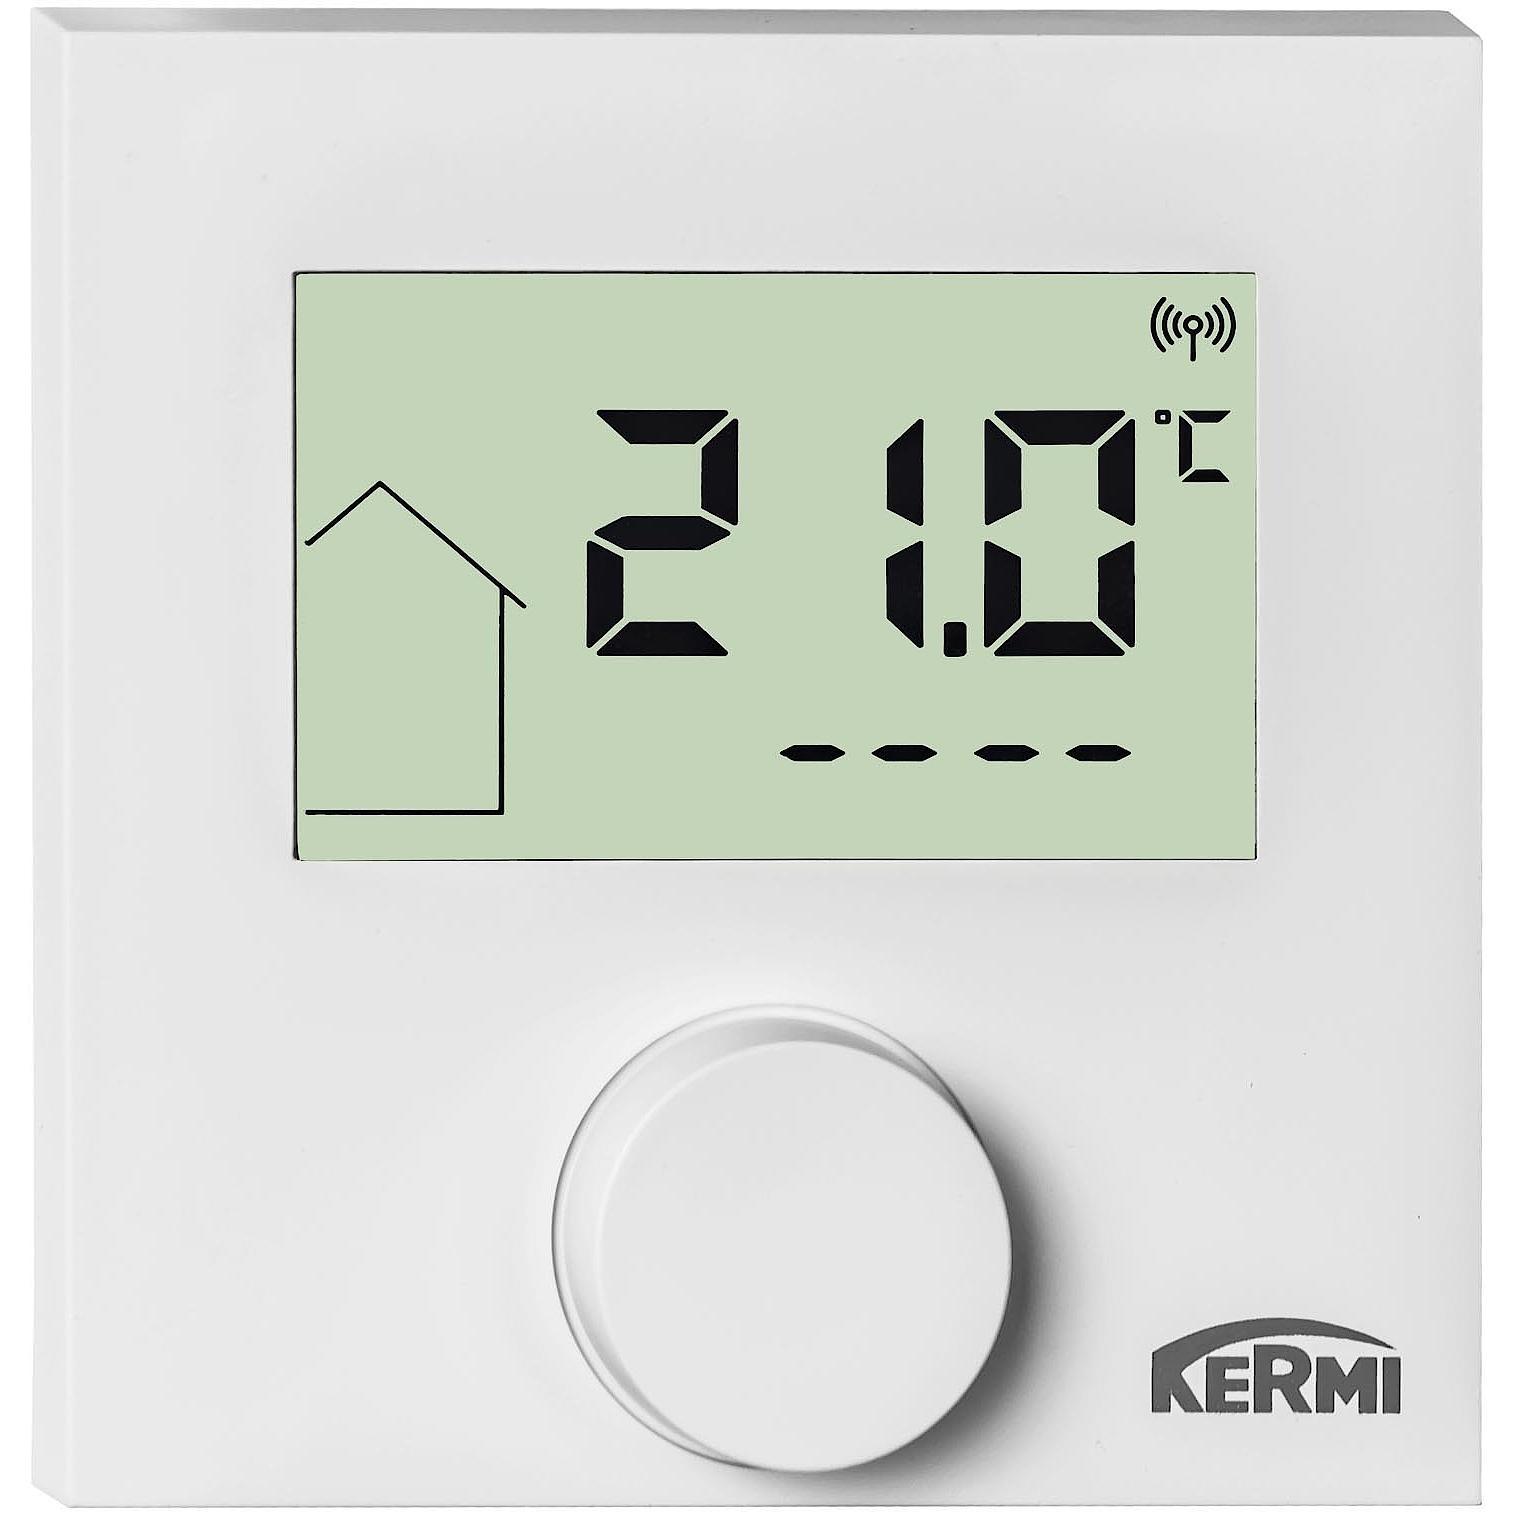 Regulace Kermi x-net Standard – stěnový regulátor LCD 230 V.